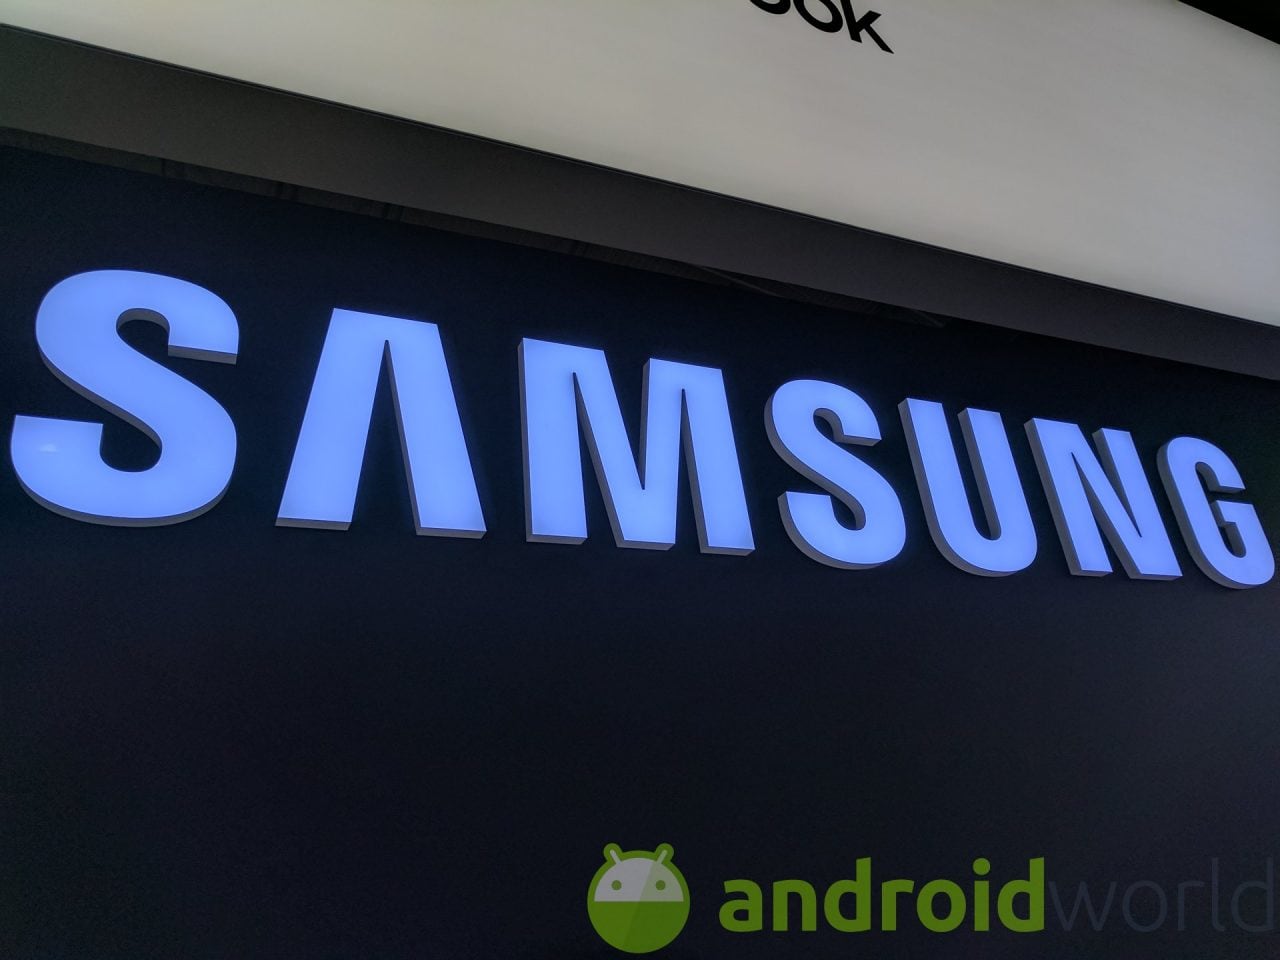 Le specifiche di Samsung Galaxy M30 si fanno interessanti, in attesa di scoprire il prezzo